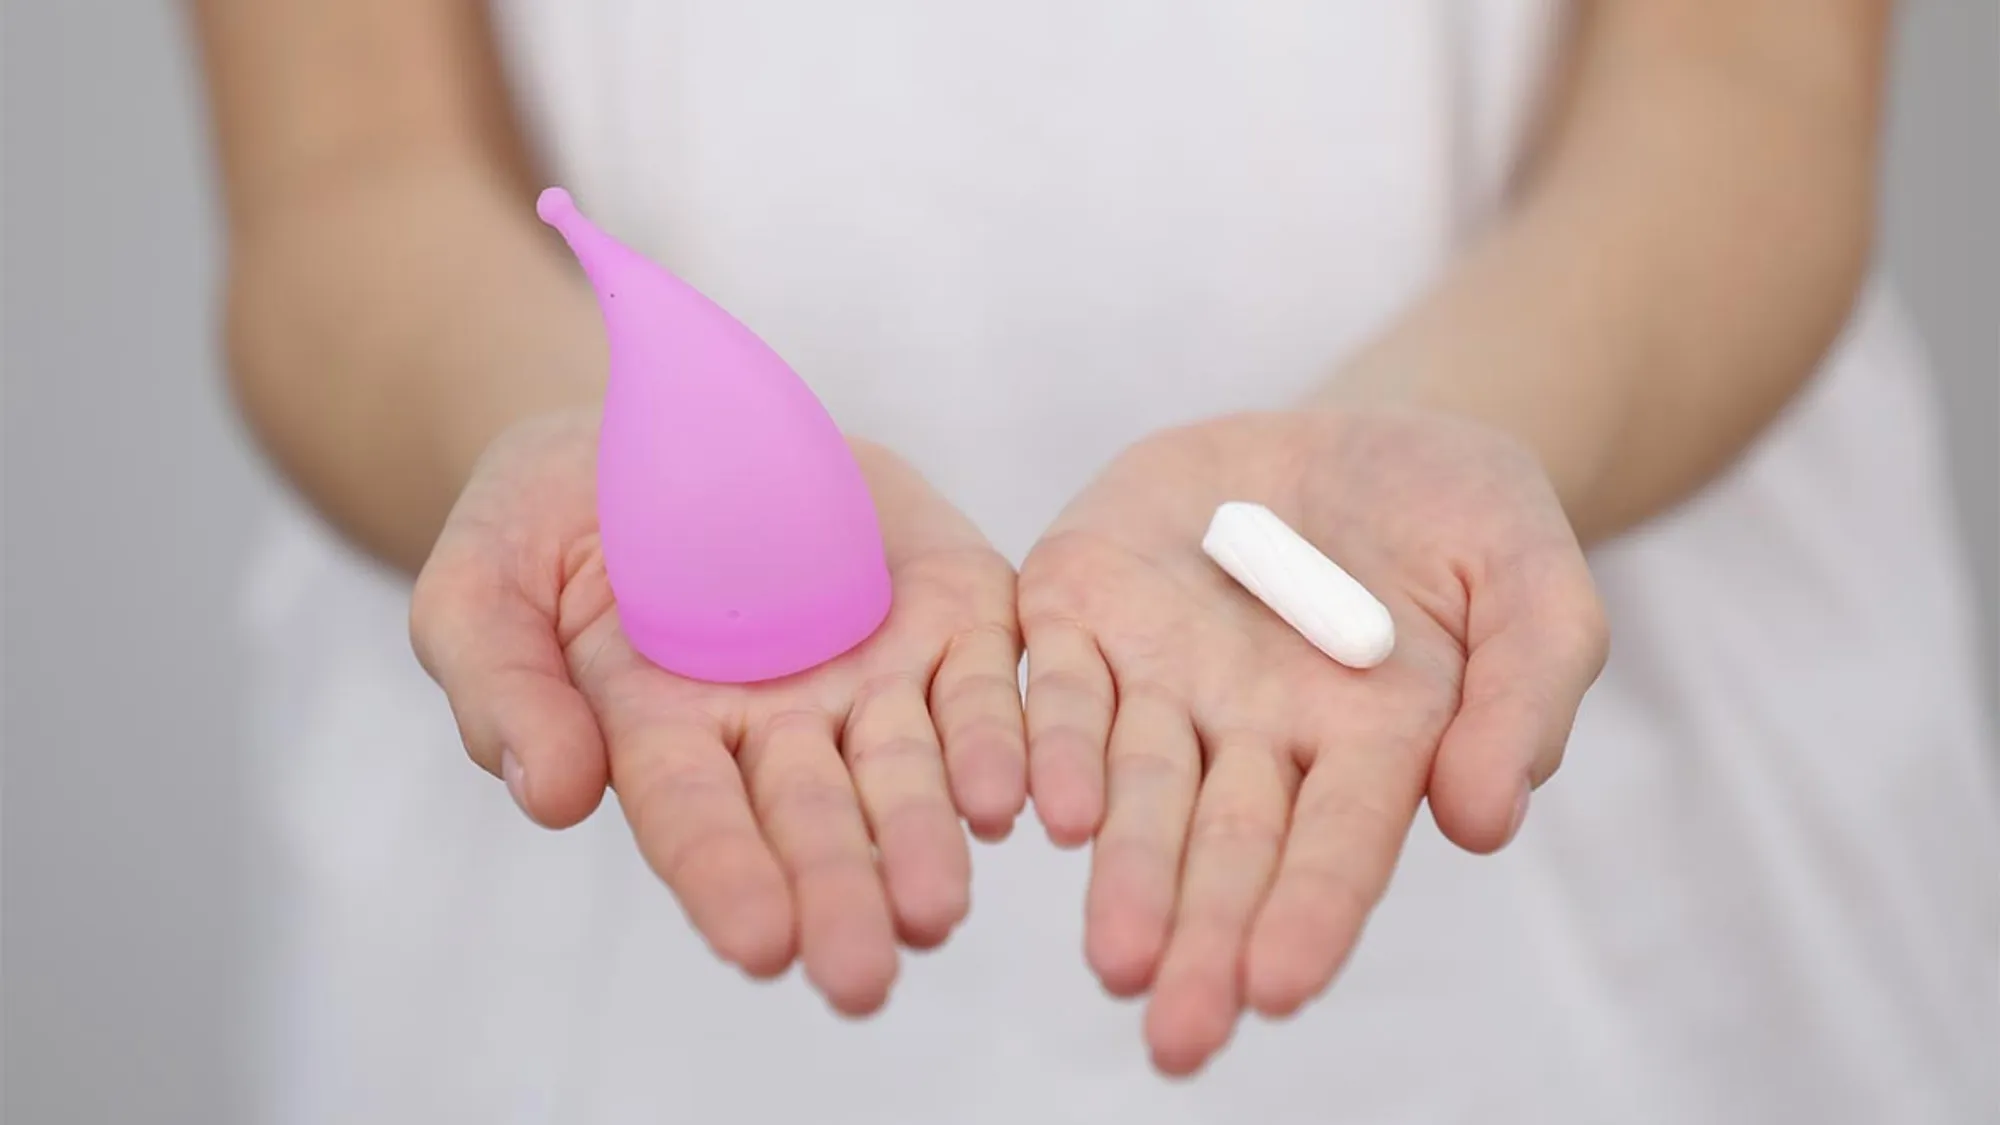 Schadstoffe in Tampons und Menstruationstassen: Öko-Test klärt auf